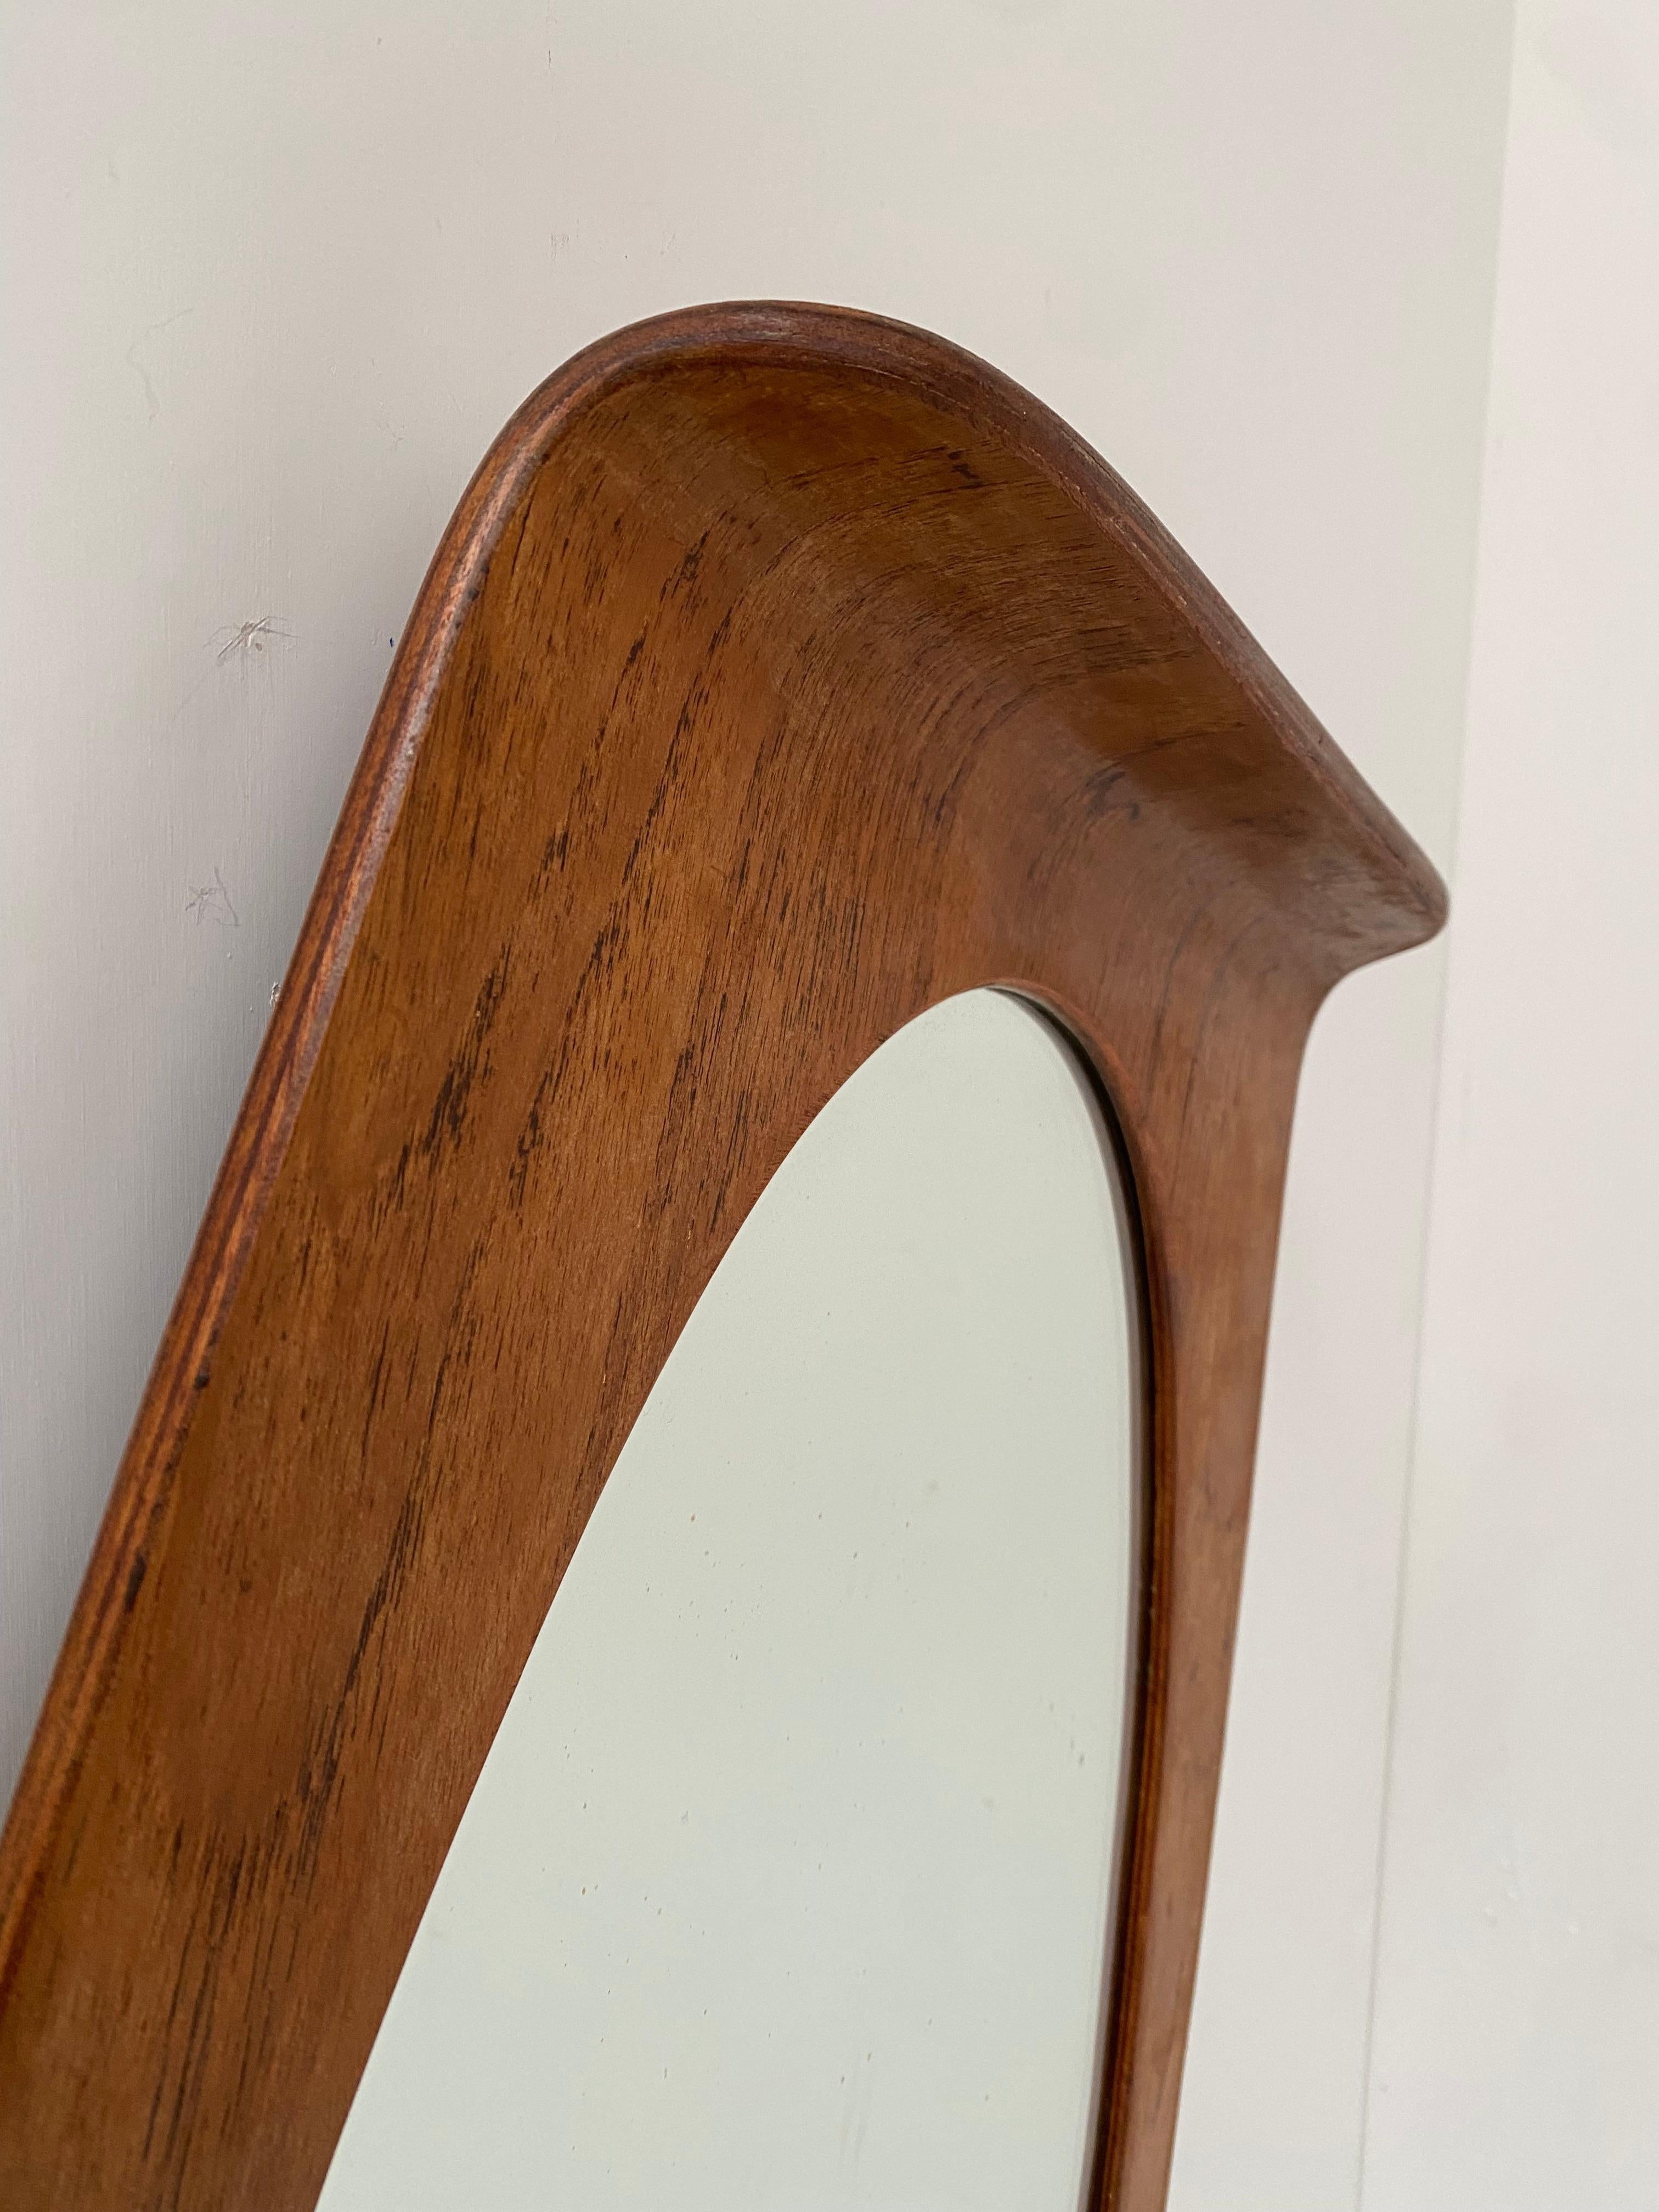 Italienischer Teakholz-Sperrholzspiegel aus den 1950er Jahren von den Meisterdesignern Franco Campo & Carlo Graffi für ihre Möbelfirma HOME

Dieses Exemplar hat und zeigt sein Alter und seine Geschichte und hat zeitgenössische Reparaturen, da es